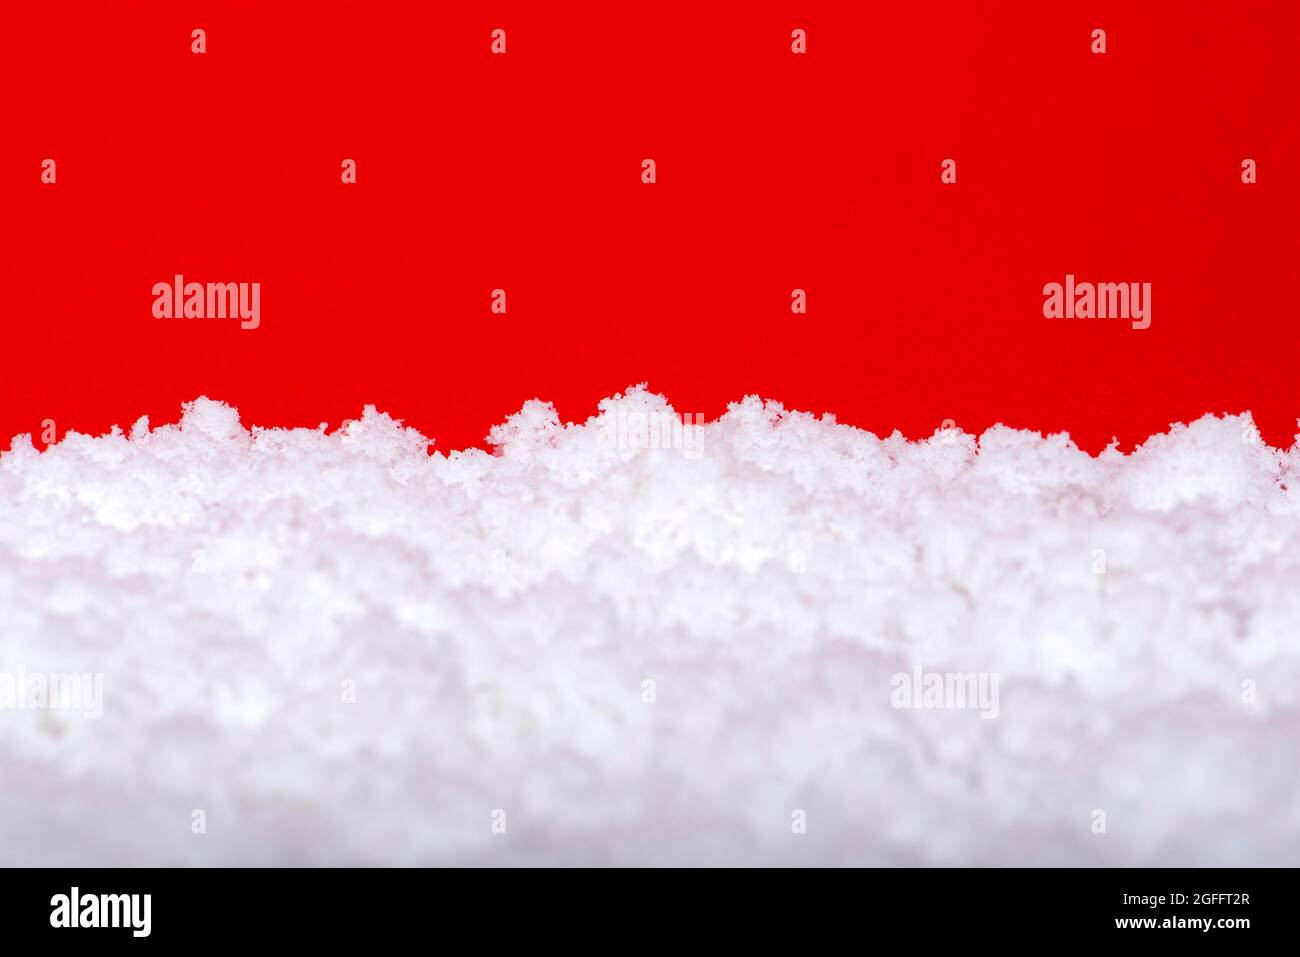 Schnee auf rotem Hintergrund. Weihnachtsthema, Großformat, Panoramafoto für ein Banner oder Website-Header. Weihnachtskarte zum Drucken. Stockfoto